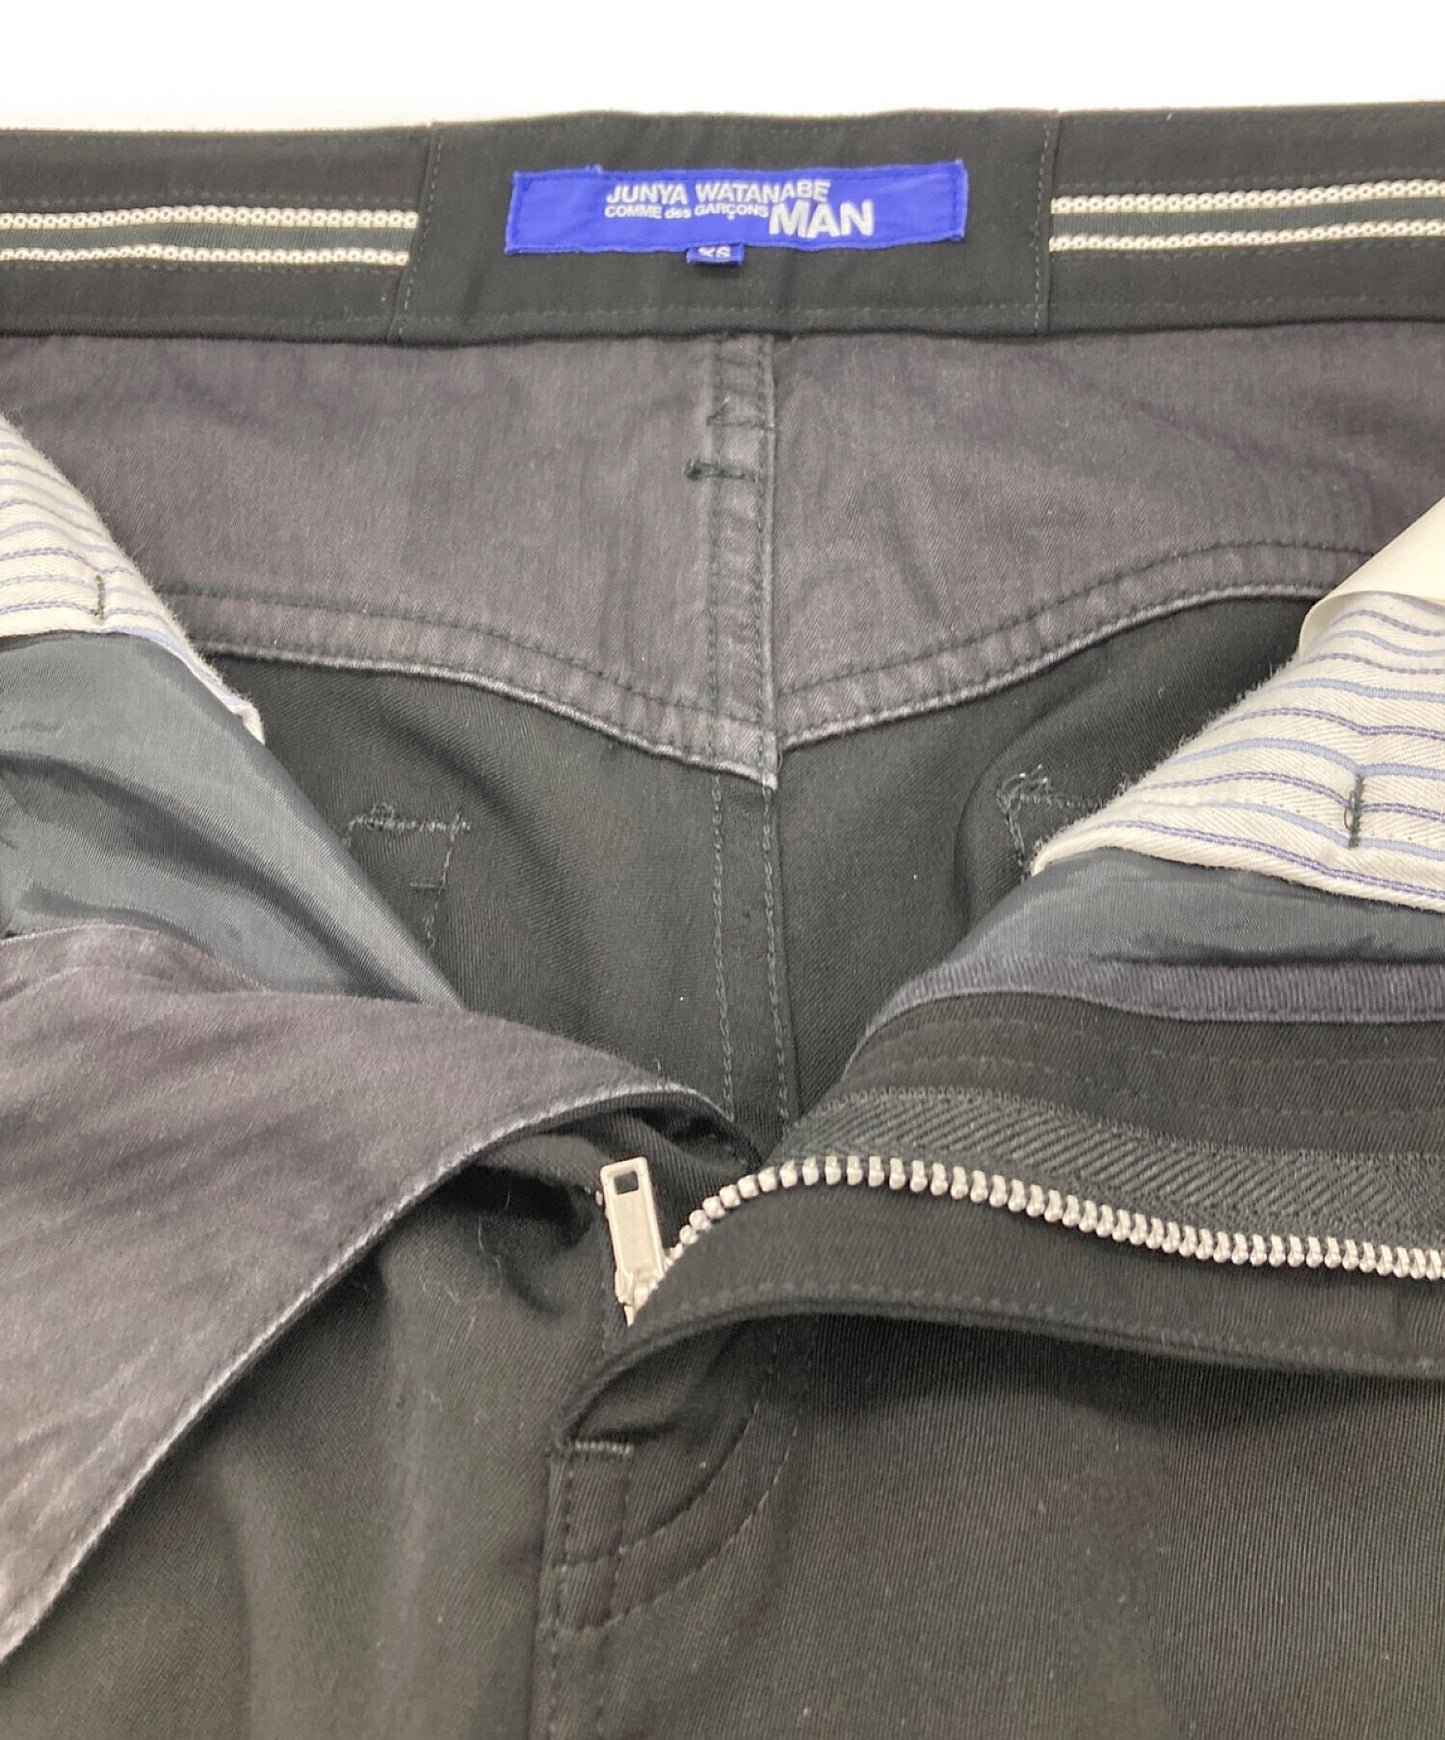 [Pre-owned] JUNYA WATANABE CdG MAN side line pants